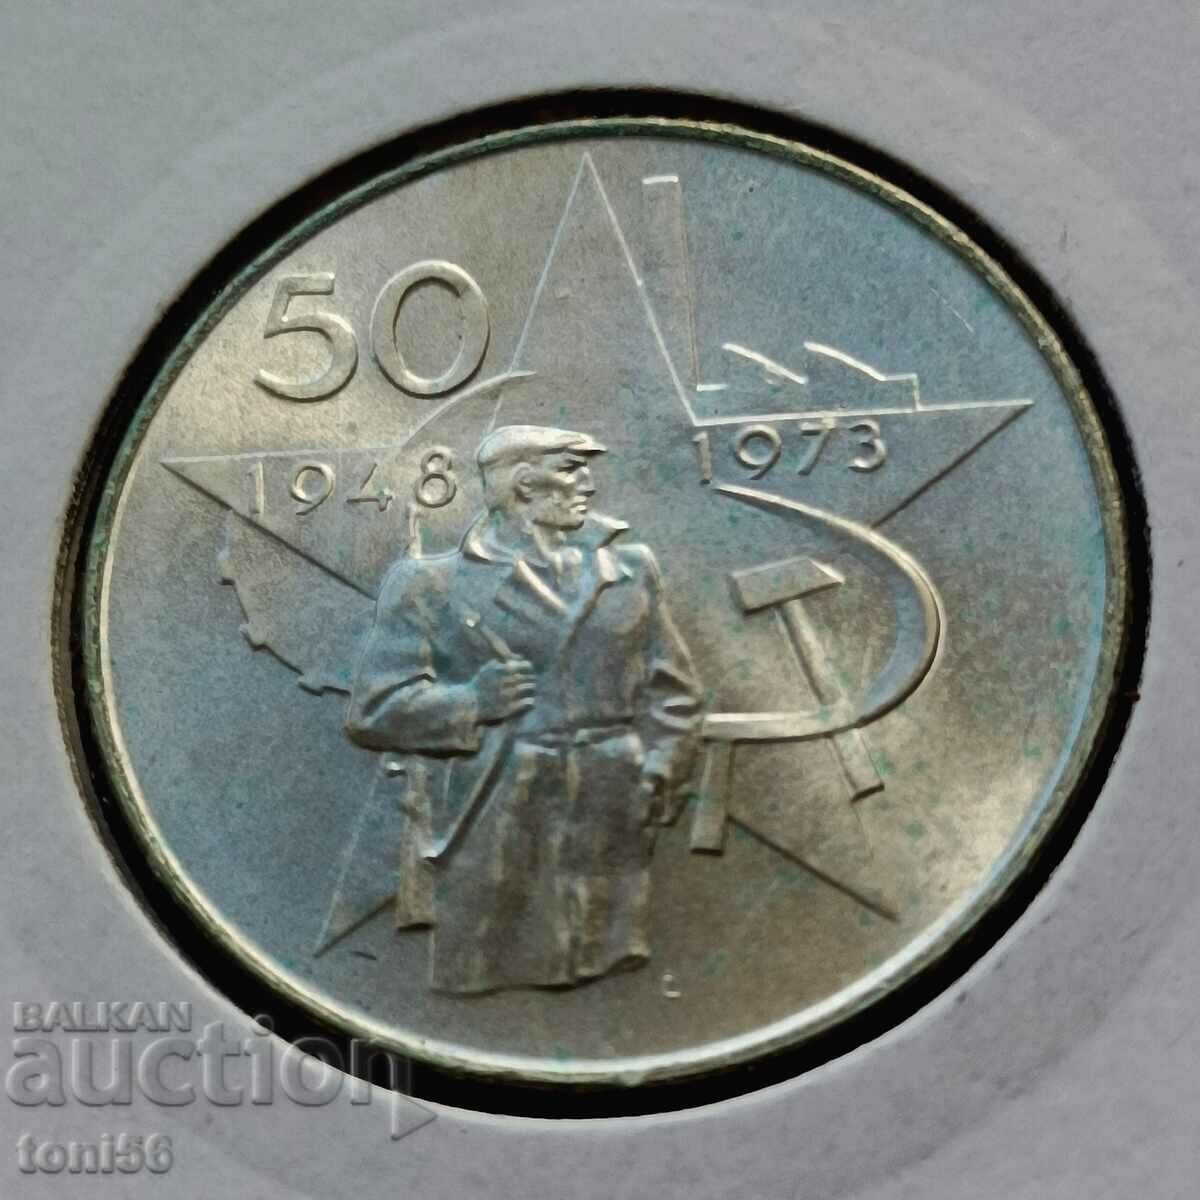 Czechoslovakia 50 kroner 1973 UNC - Silver